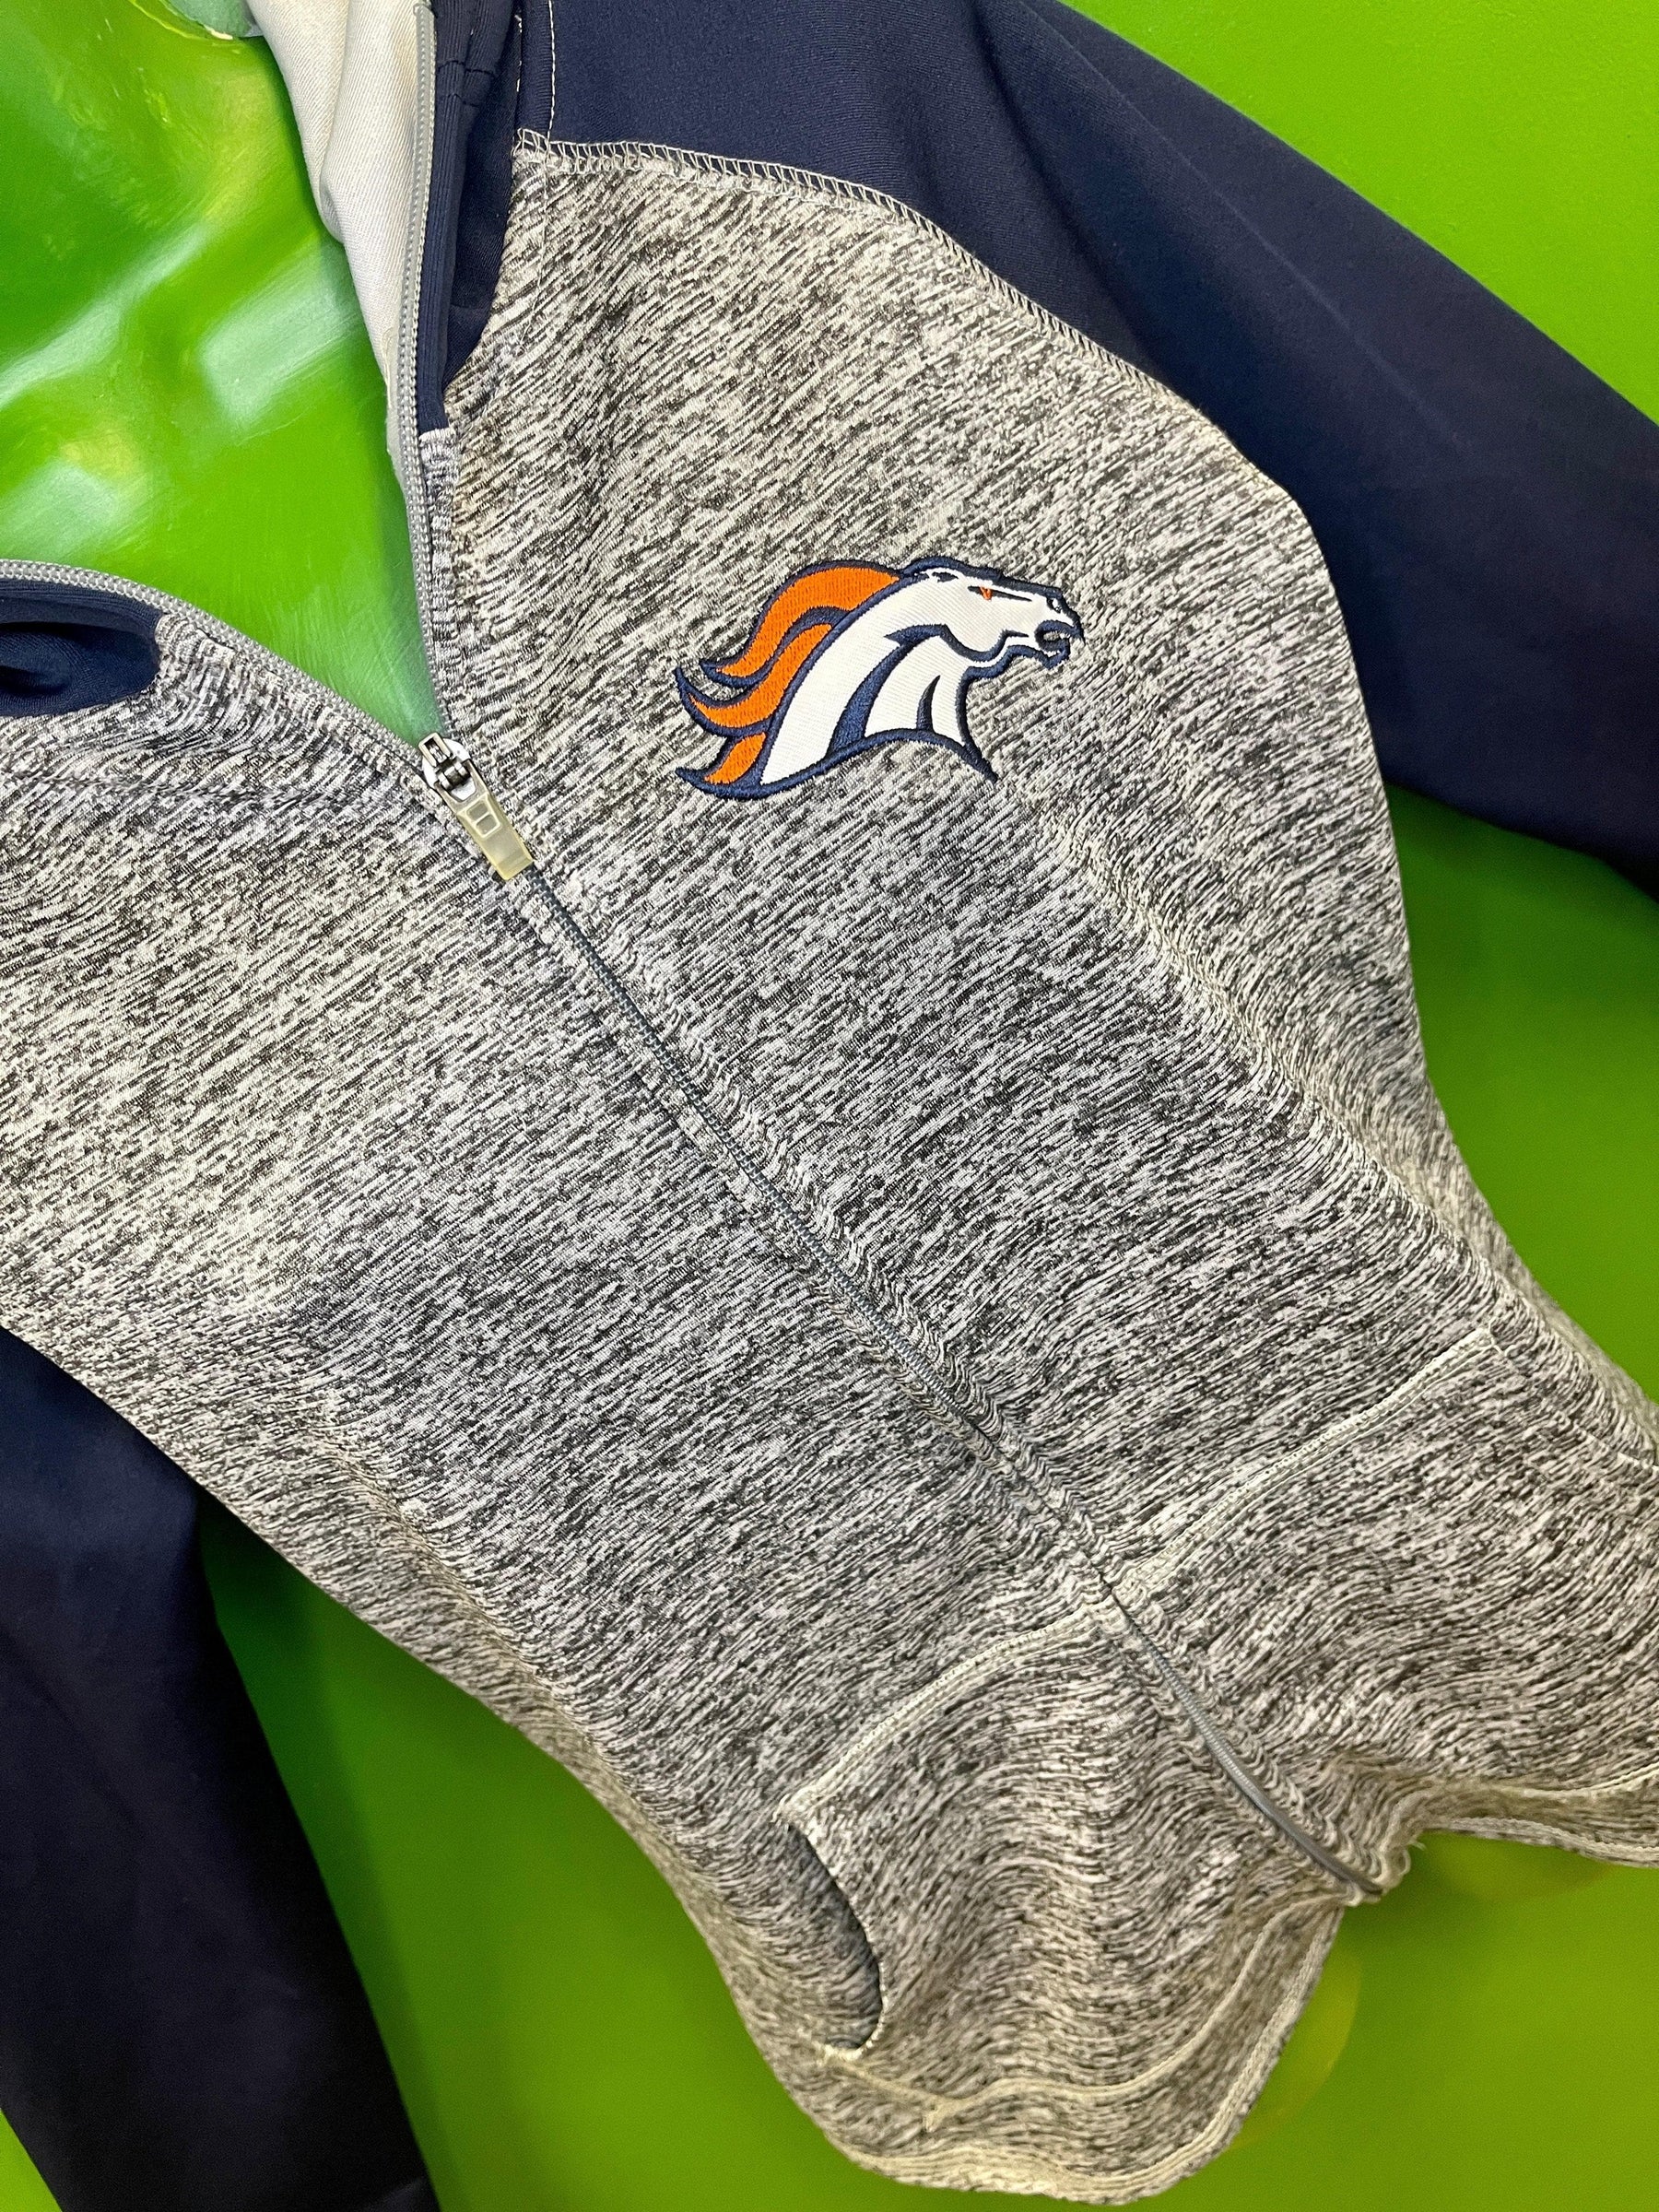 NFL Denver Broncos Full Zip Athletic Jacket Hoodie Women's Medium